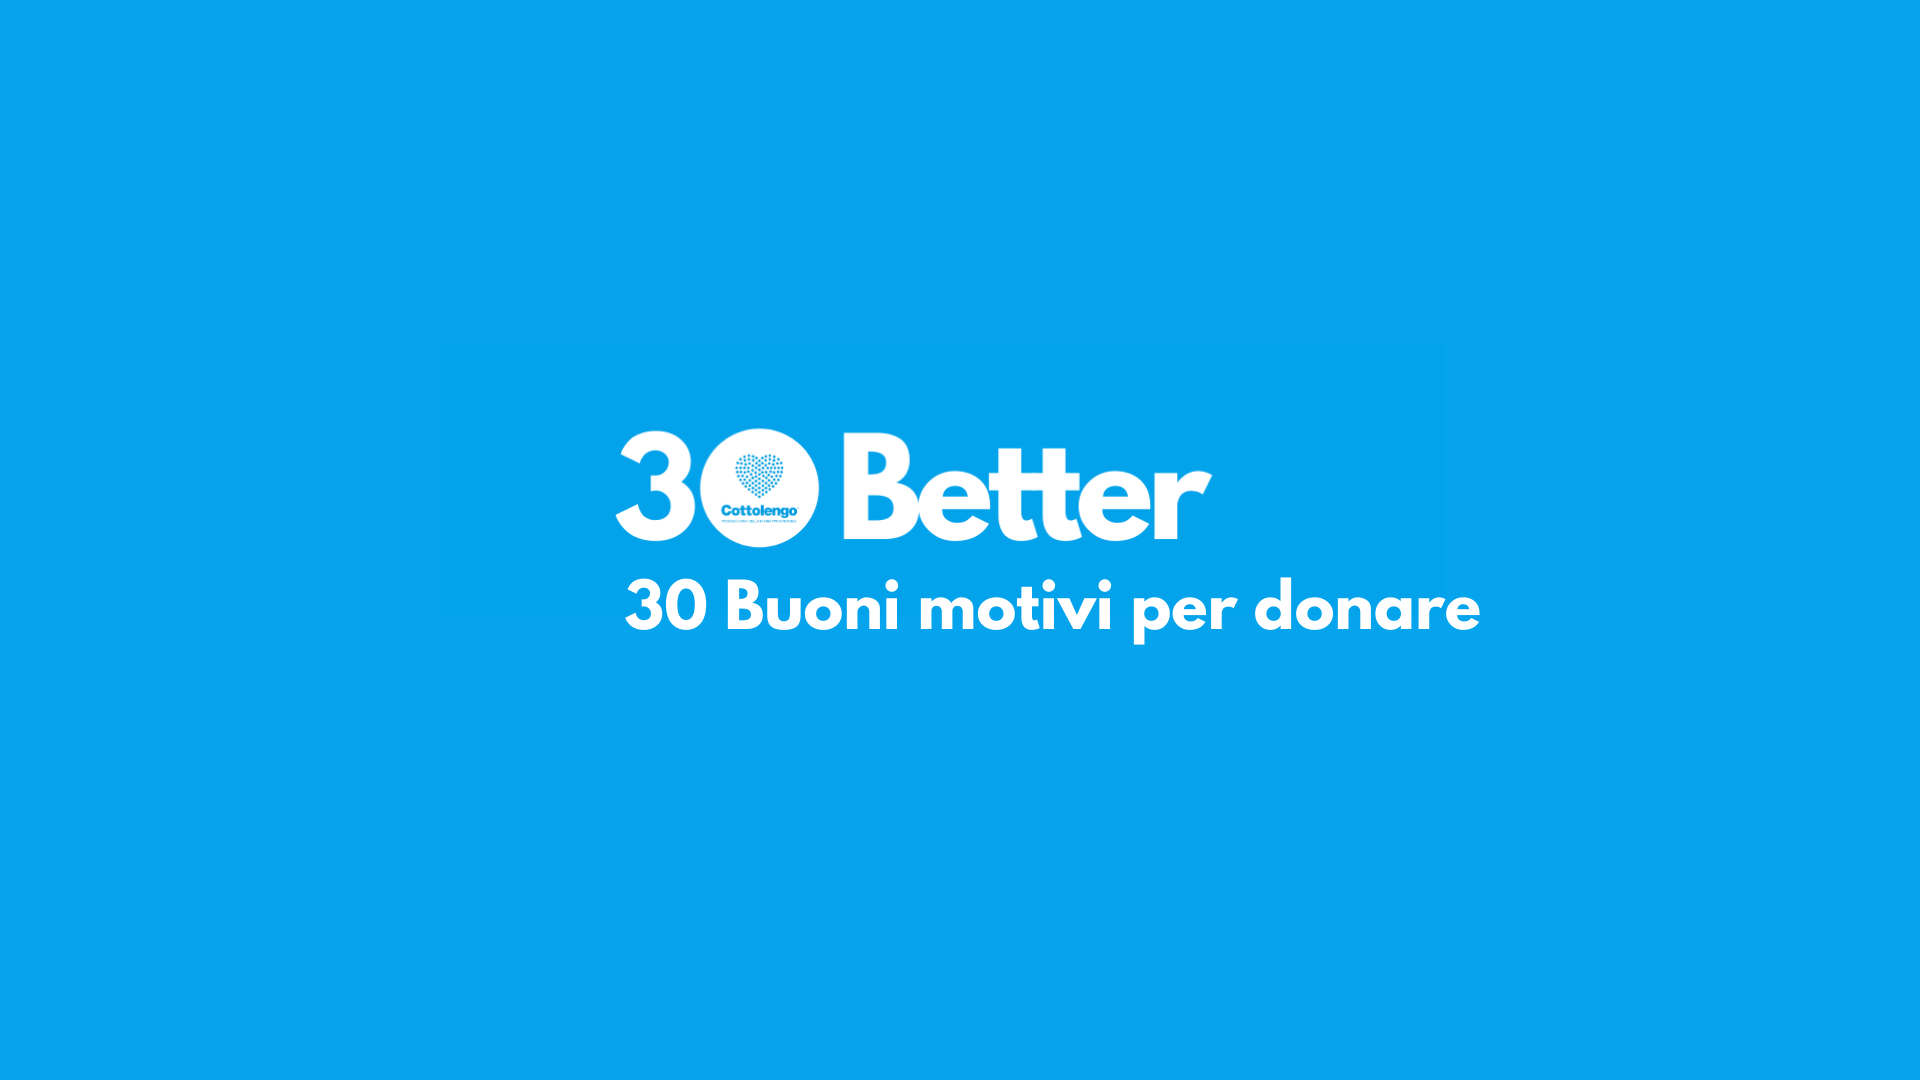 30 Better - 30 Buoni motivi per donare-Fondazione Cottolengo Onlus